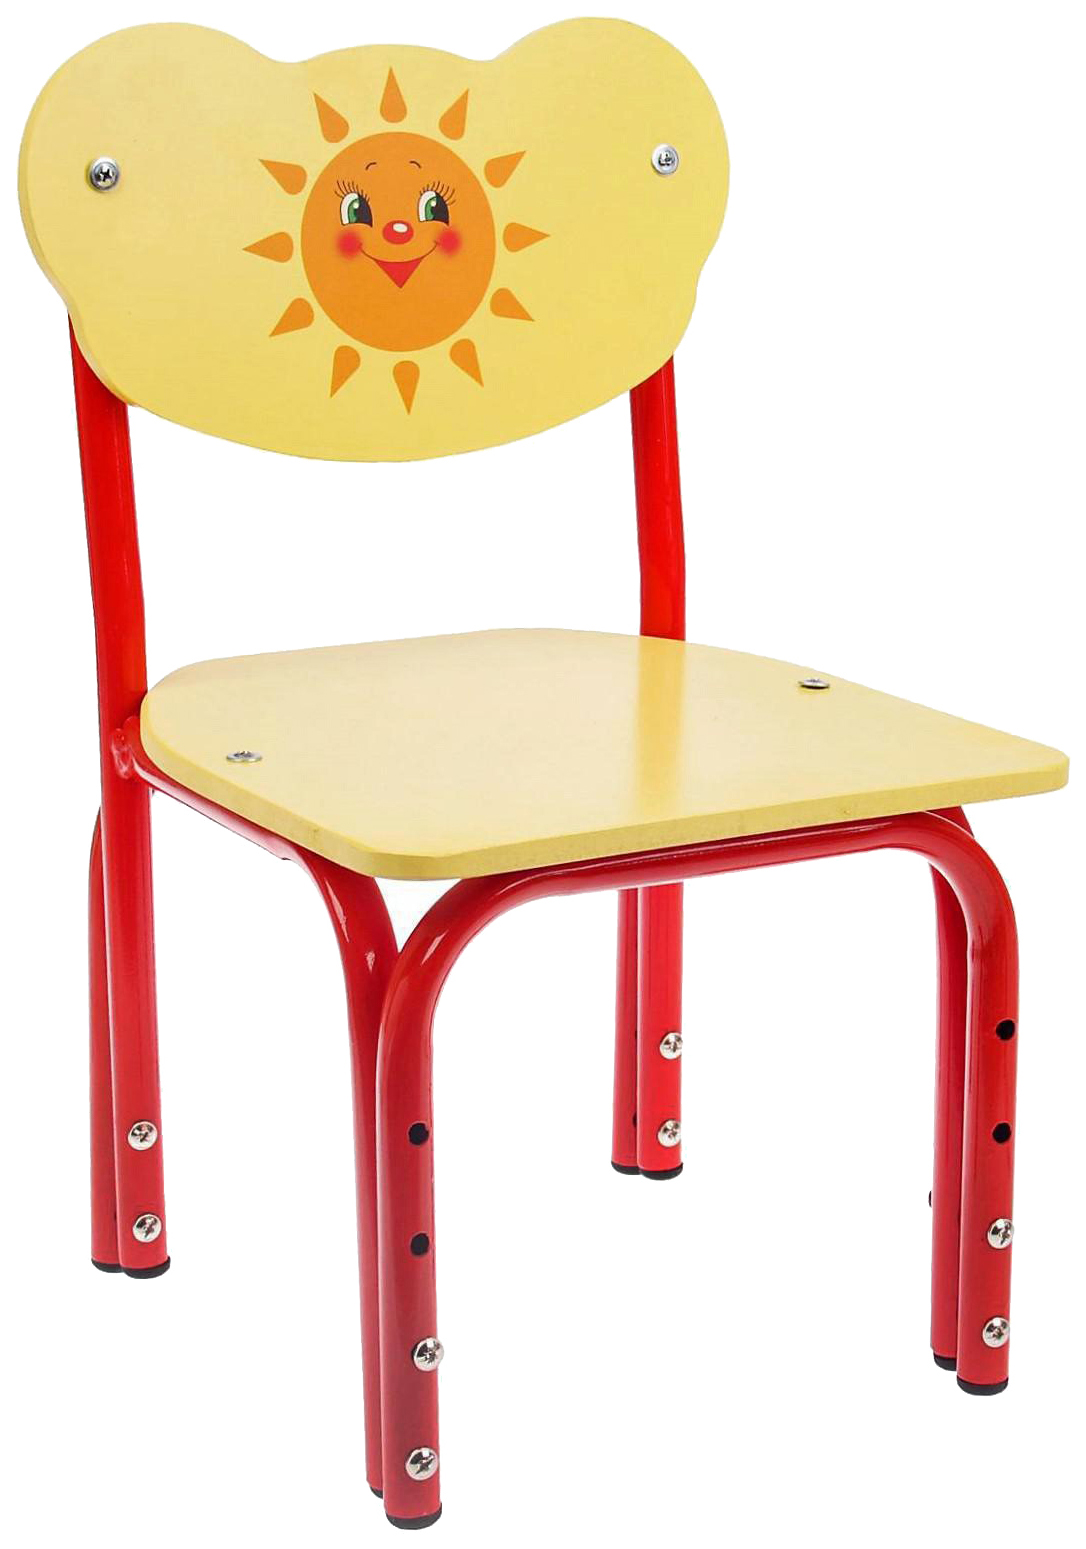 Детский стул Кузя. Солнышко, регулируемый, разборный